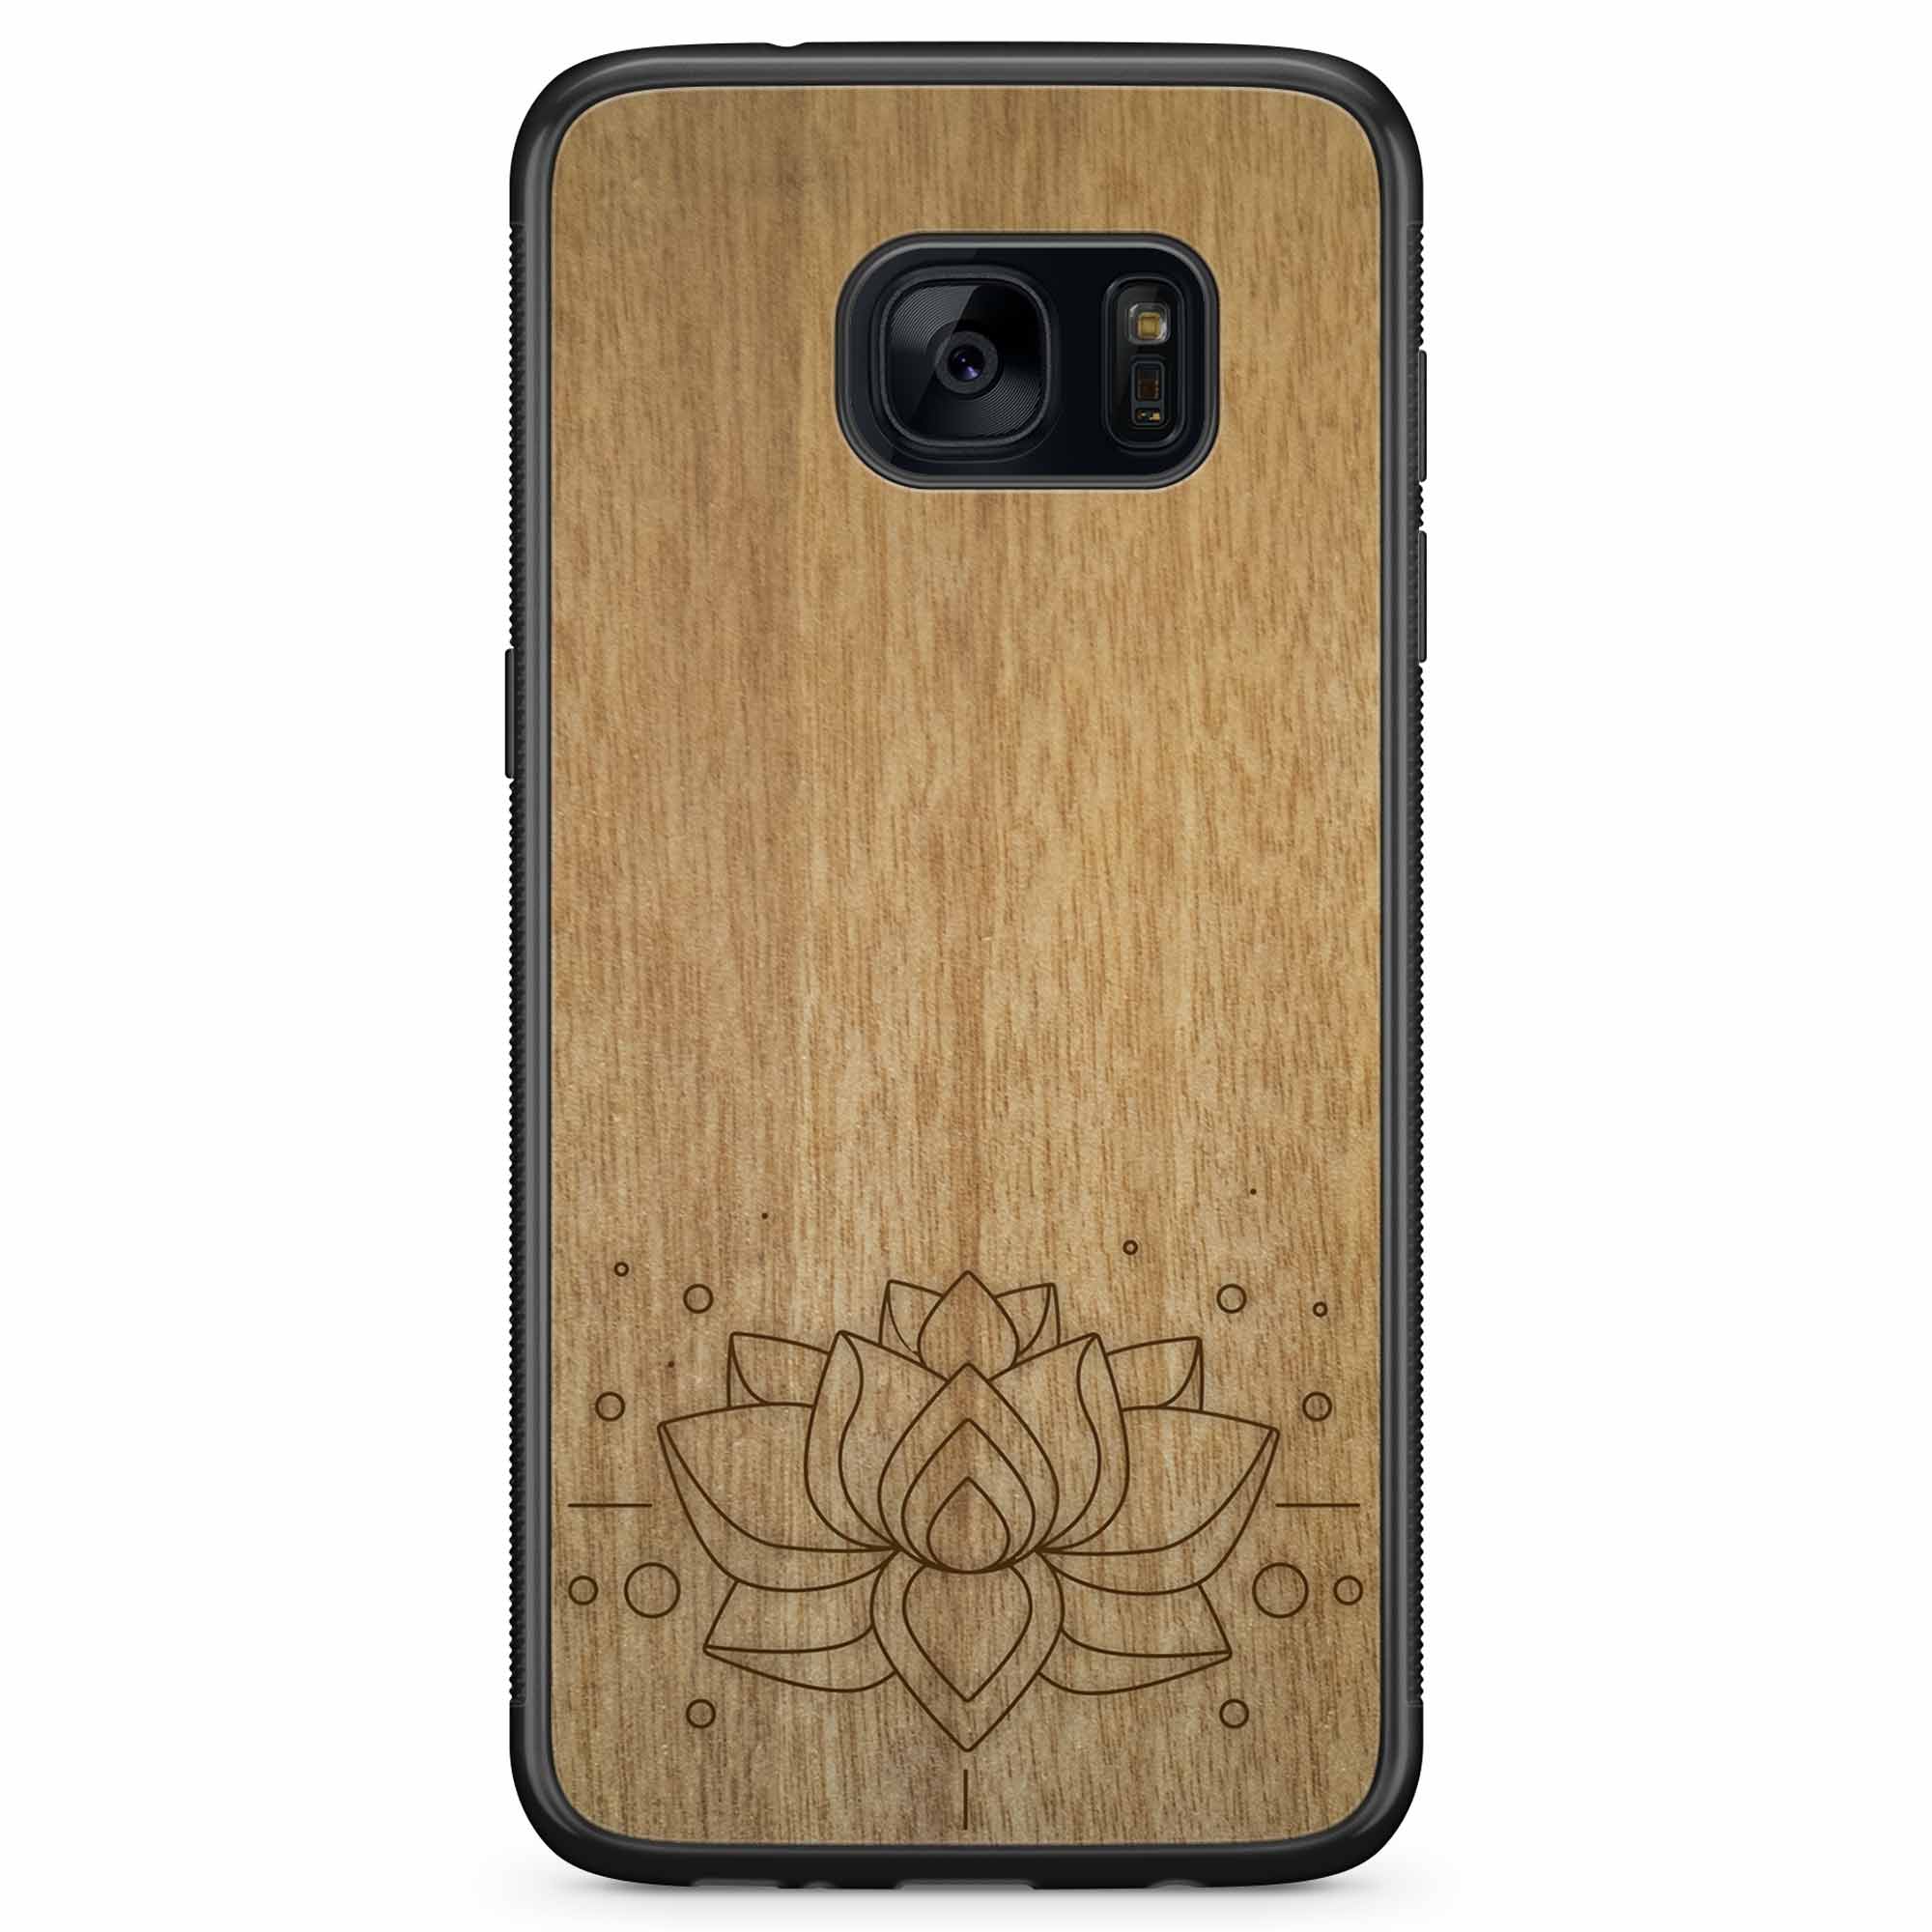 Деревянный чехол для телефона Samsung S7 с гравировкой Lotus